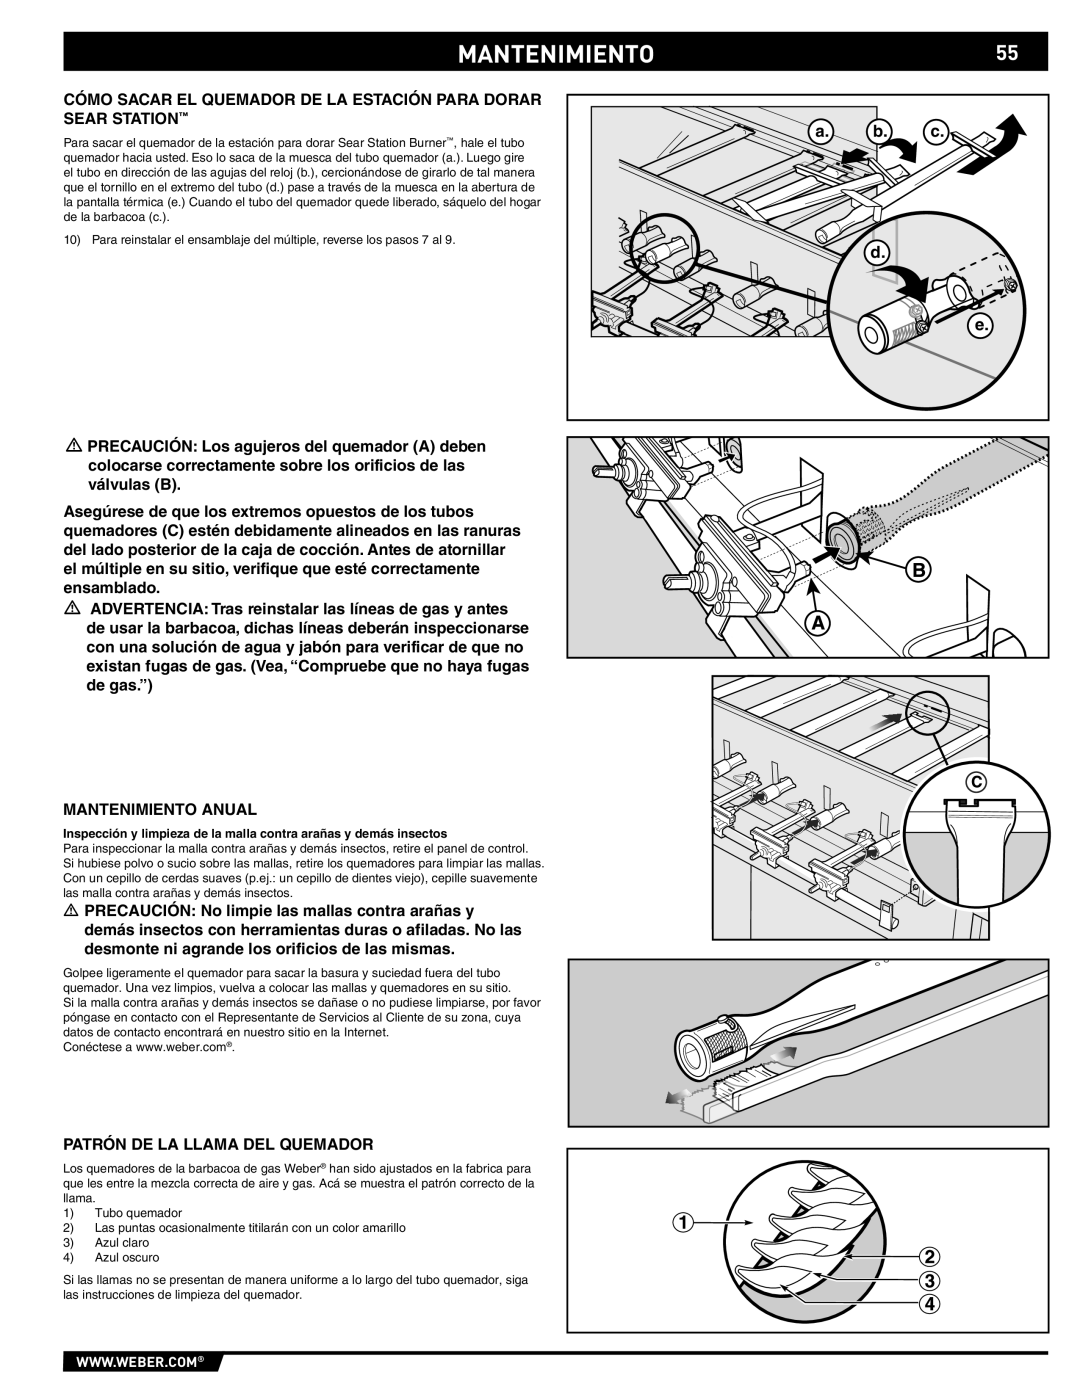 Weber S-470TM manual MANTENIMIENTO55, a. b. c d e 